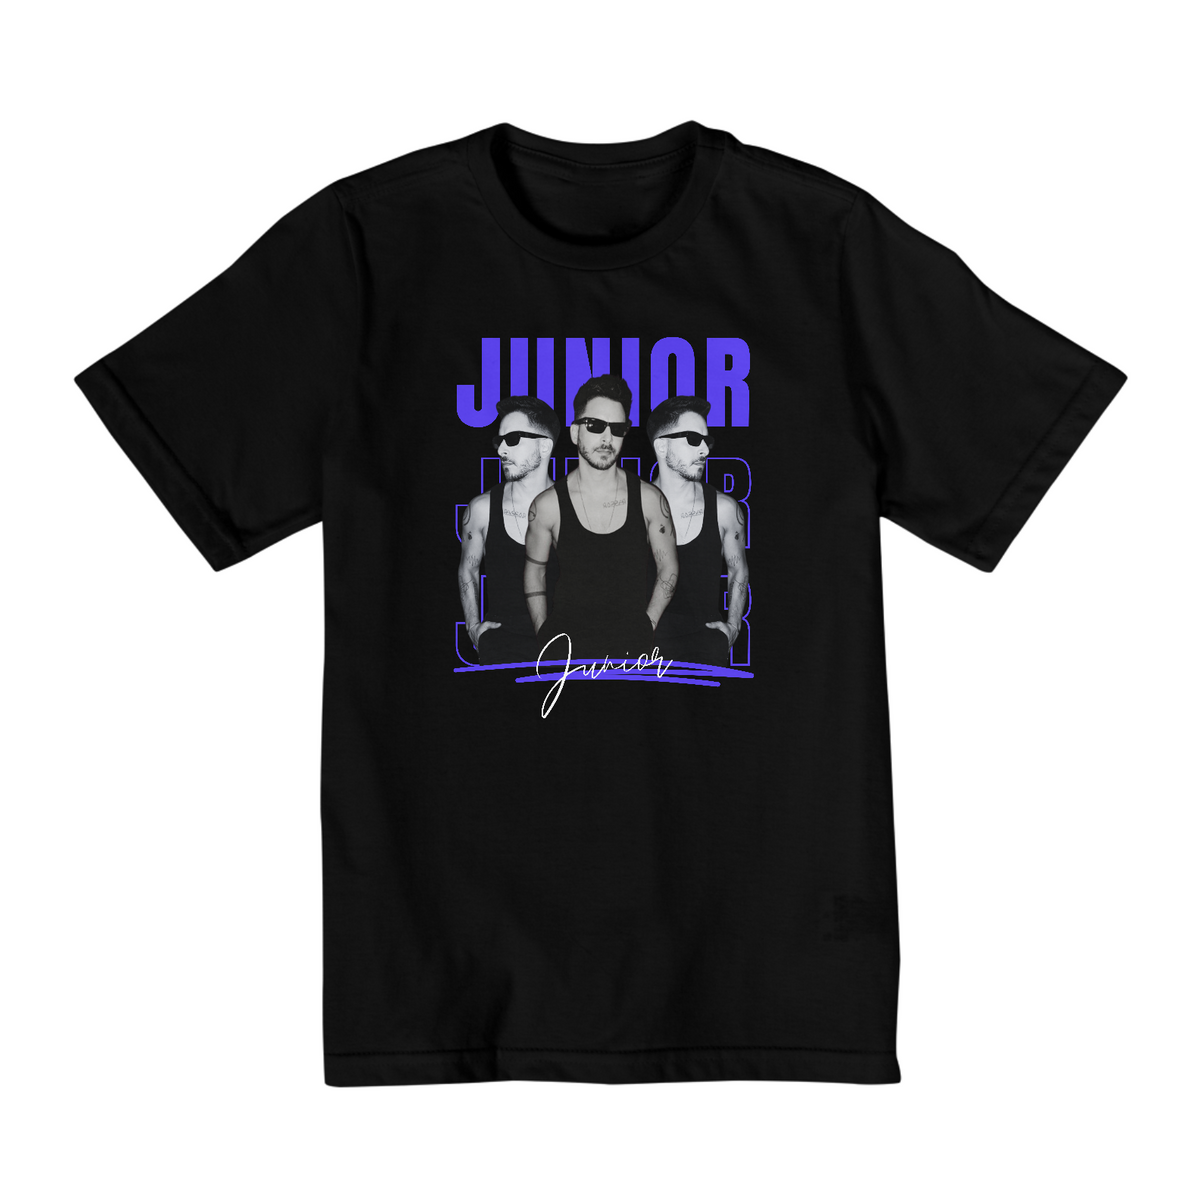 Nome do produto: Camiseta Infantil 2 a 8 - JUNIOR 